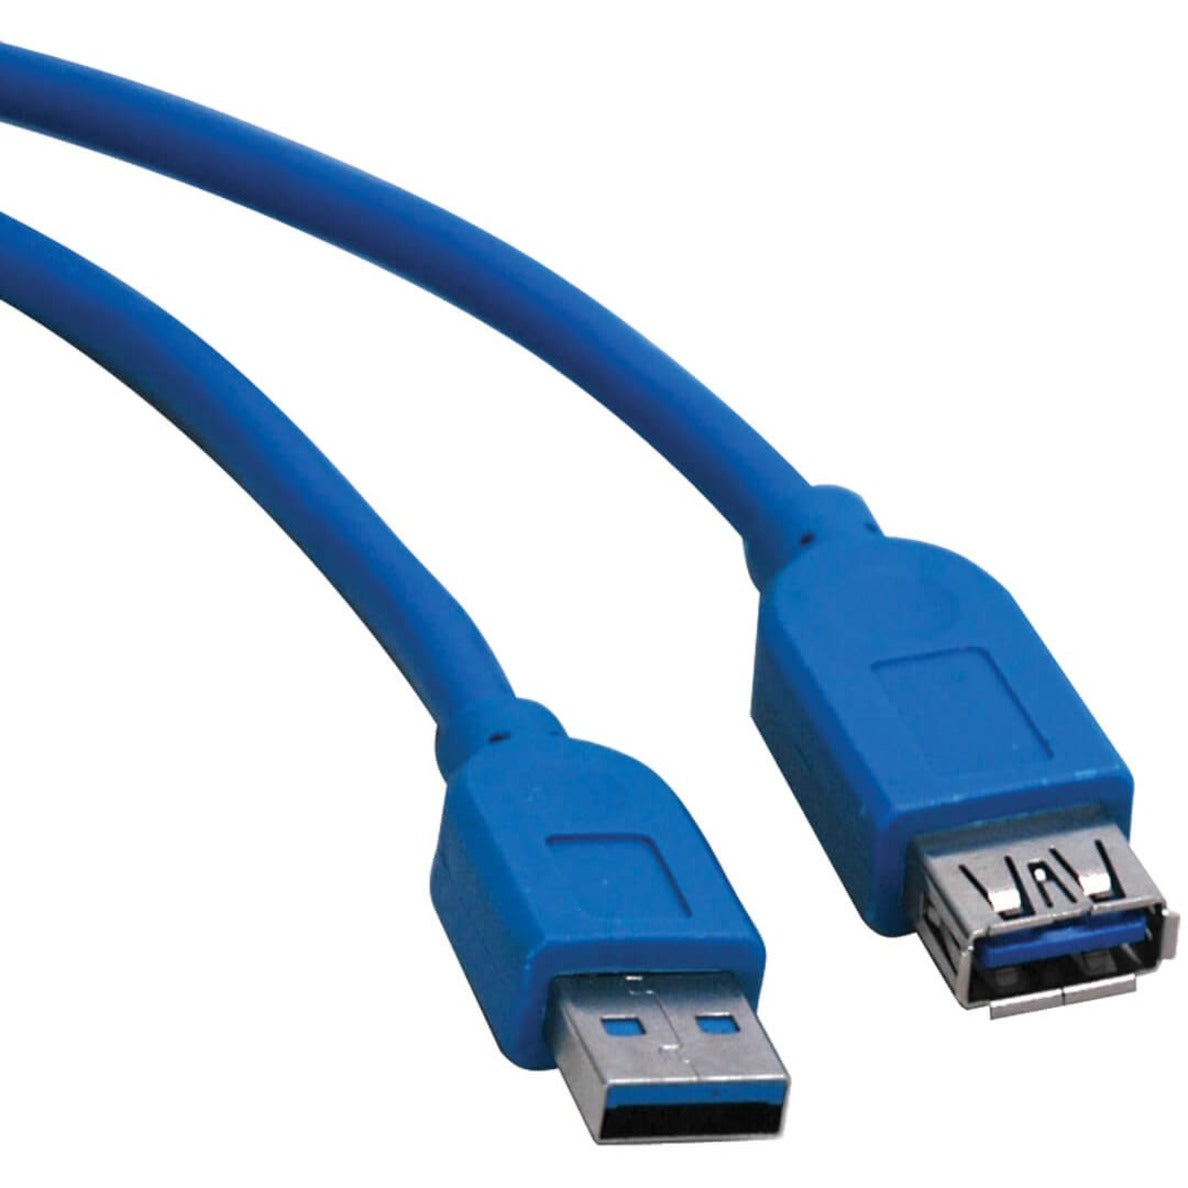 特兰普利特 U324-010 USB 3.0 超速延长线 10F 蓝色 特兰普利特